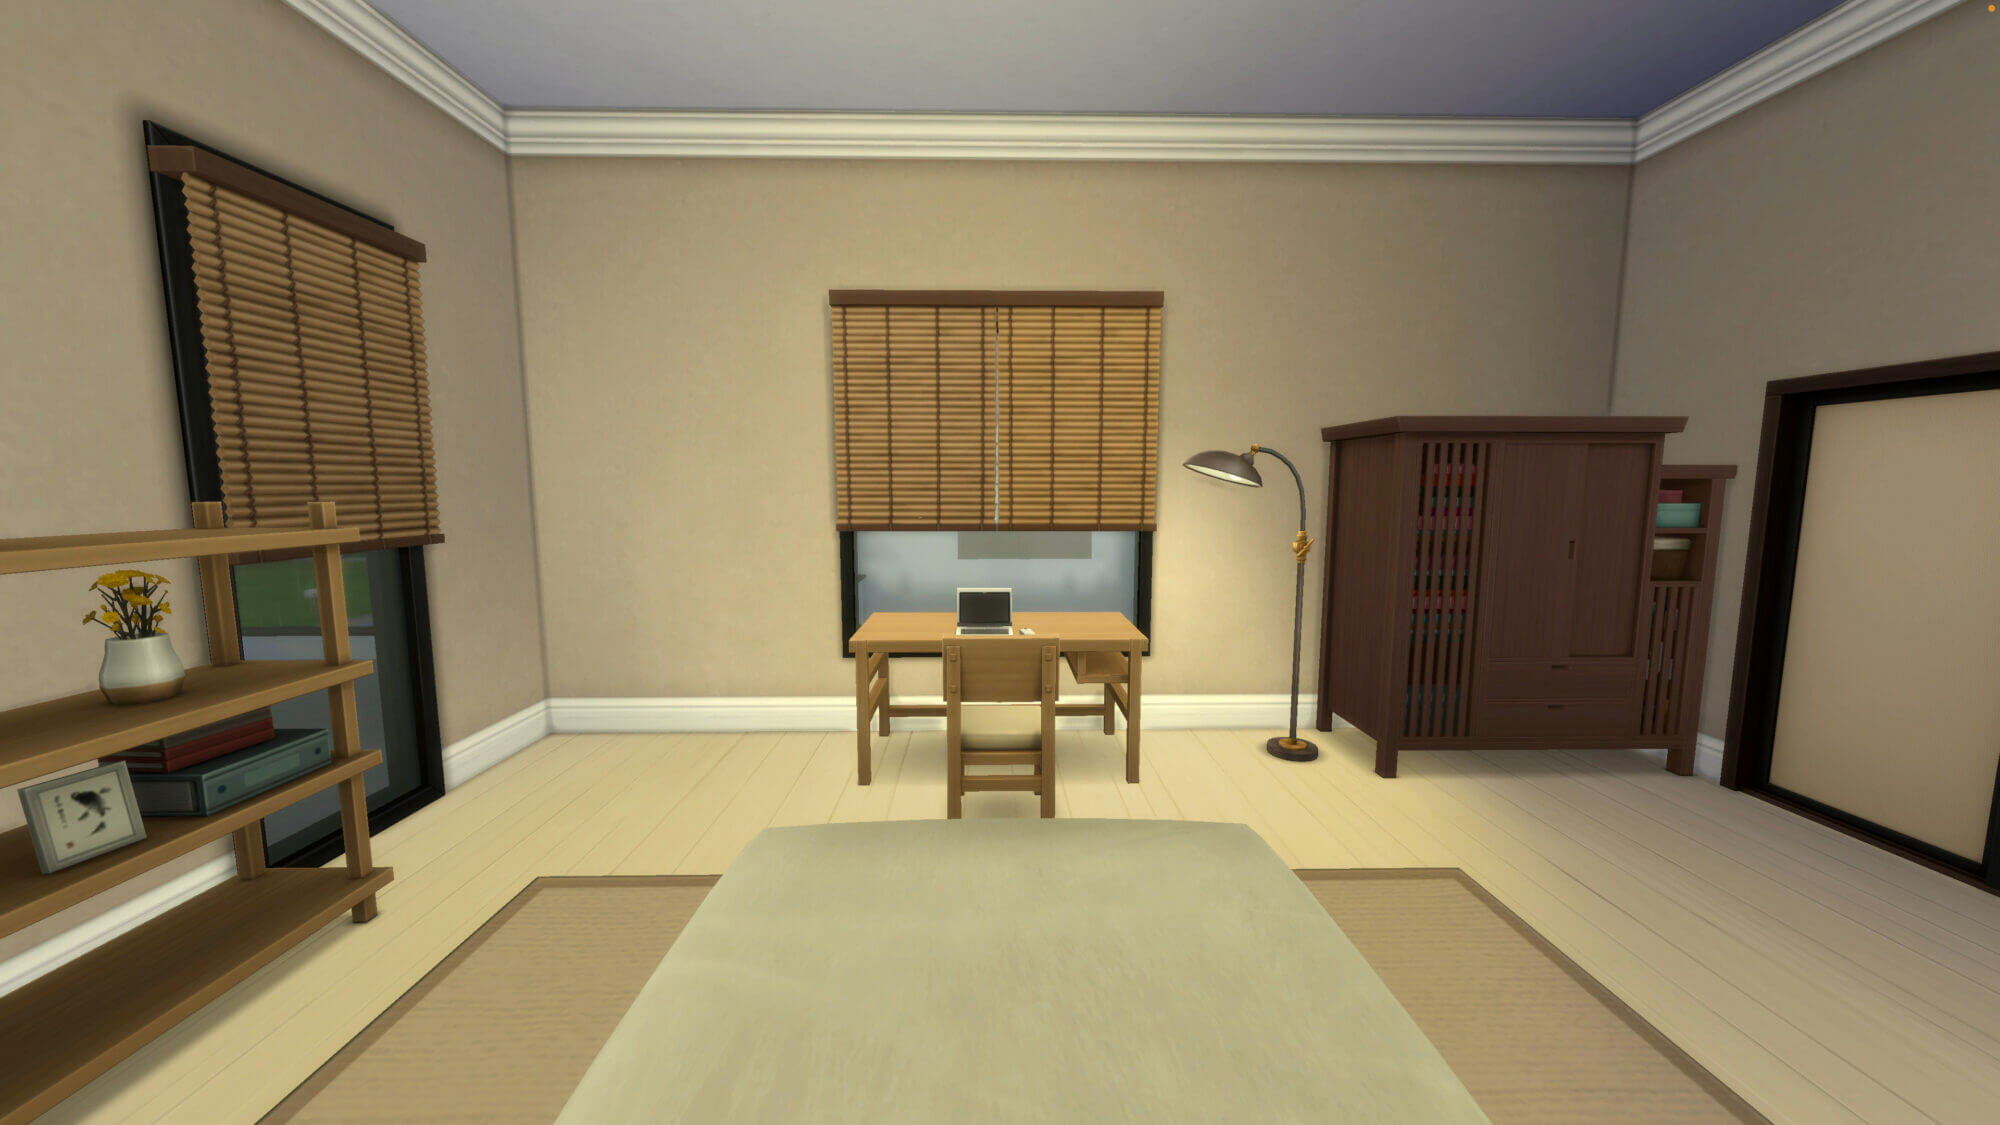 แจกบ้าน The Sims 4 สไตล์บ้านเดี่ยวโฮมมี่ | Inspire by หทัยราษฎร์ 39 19